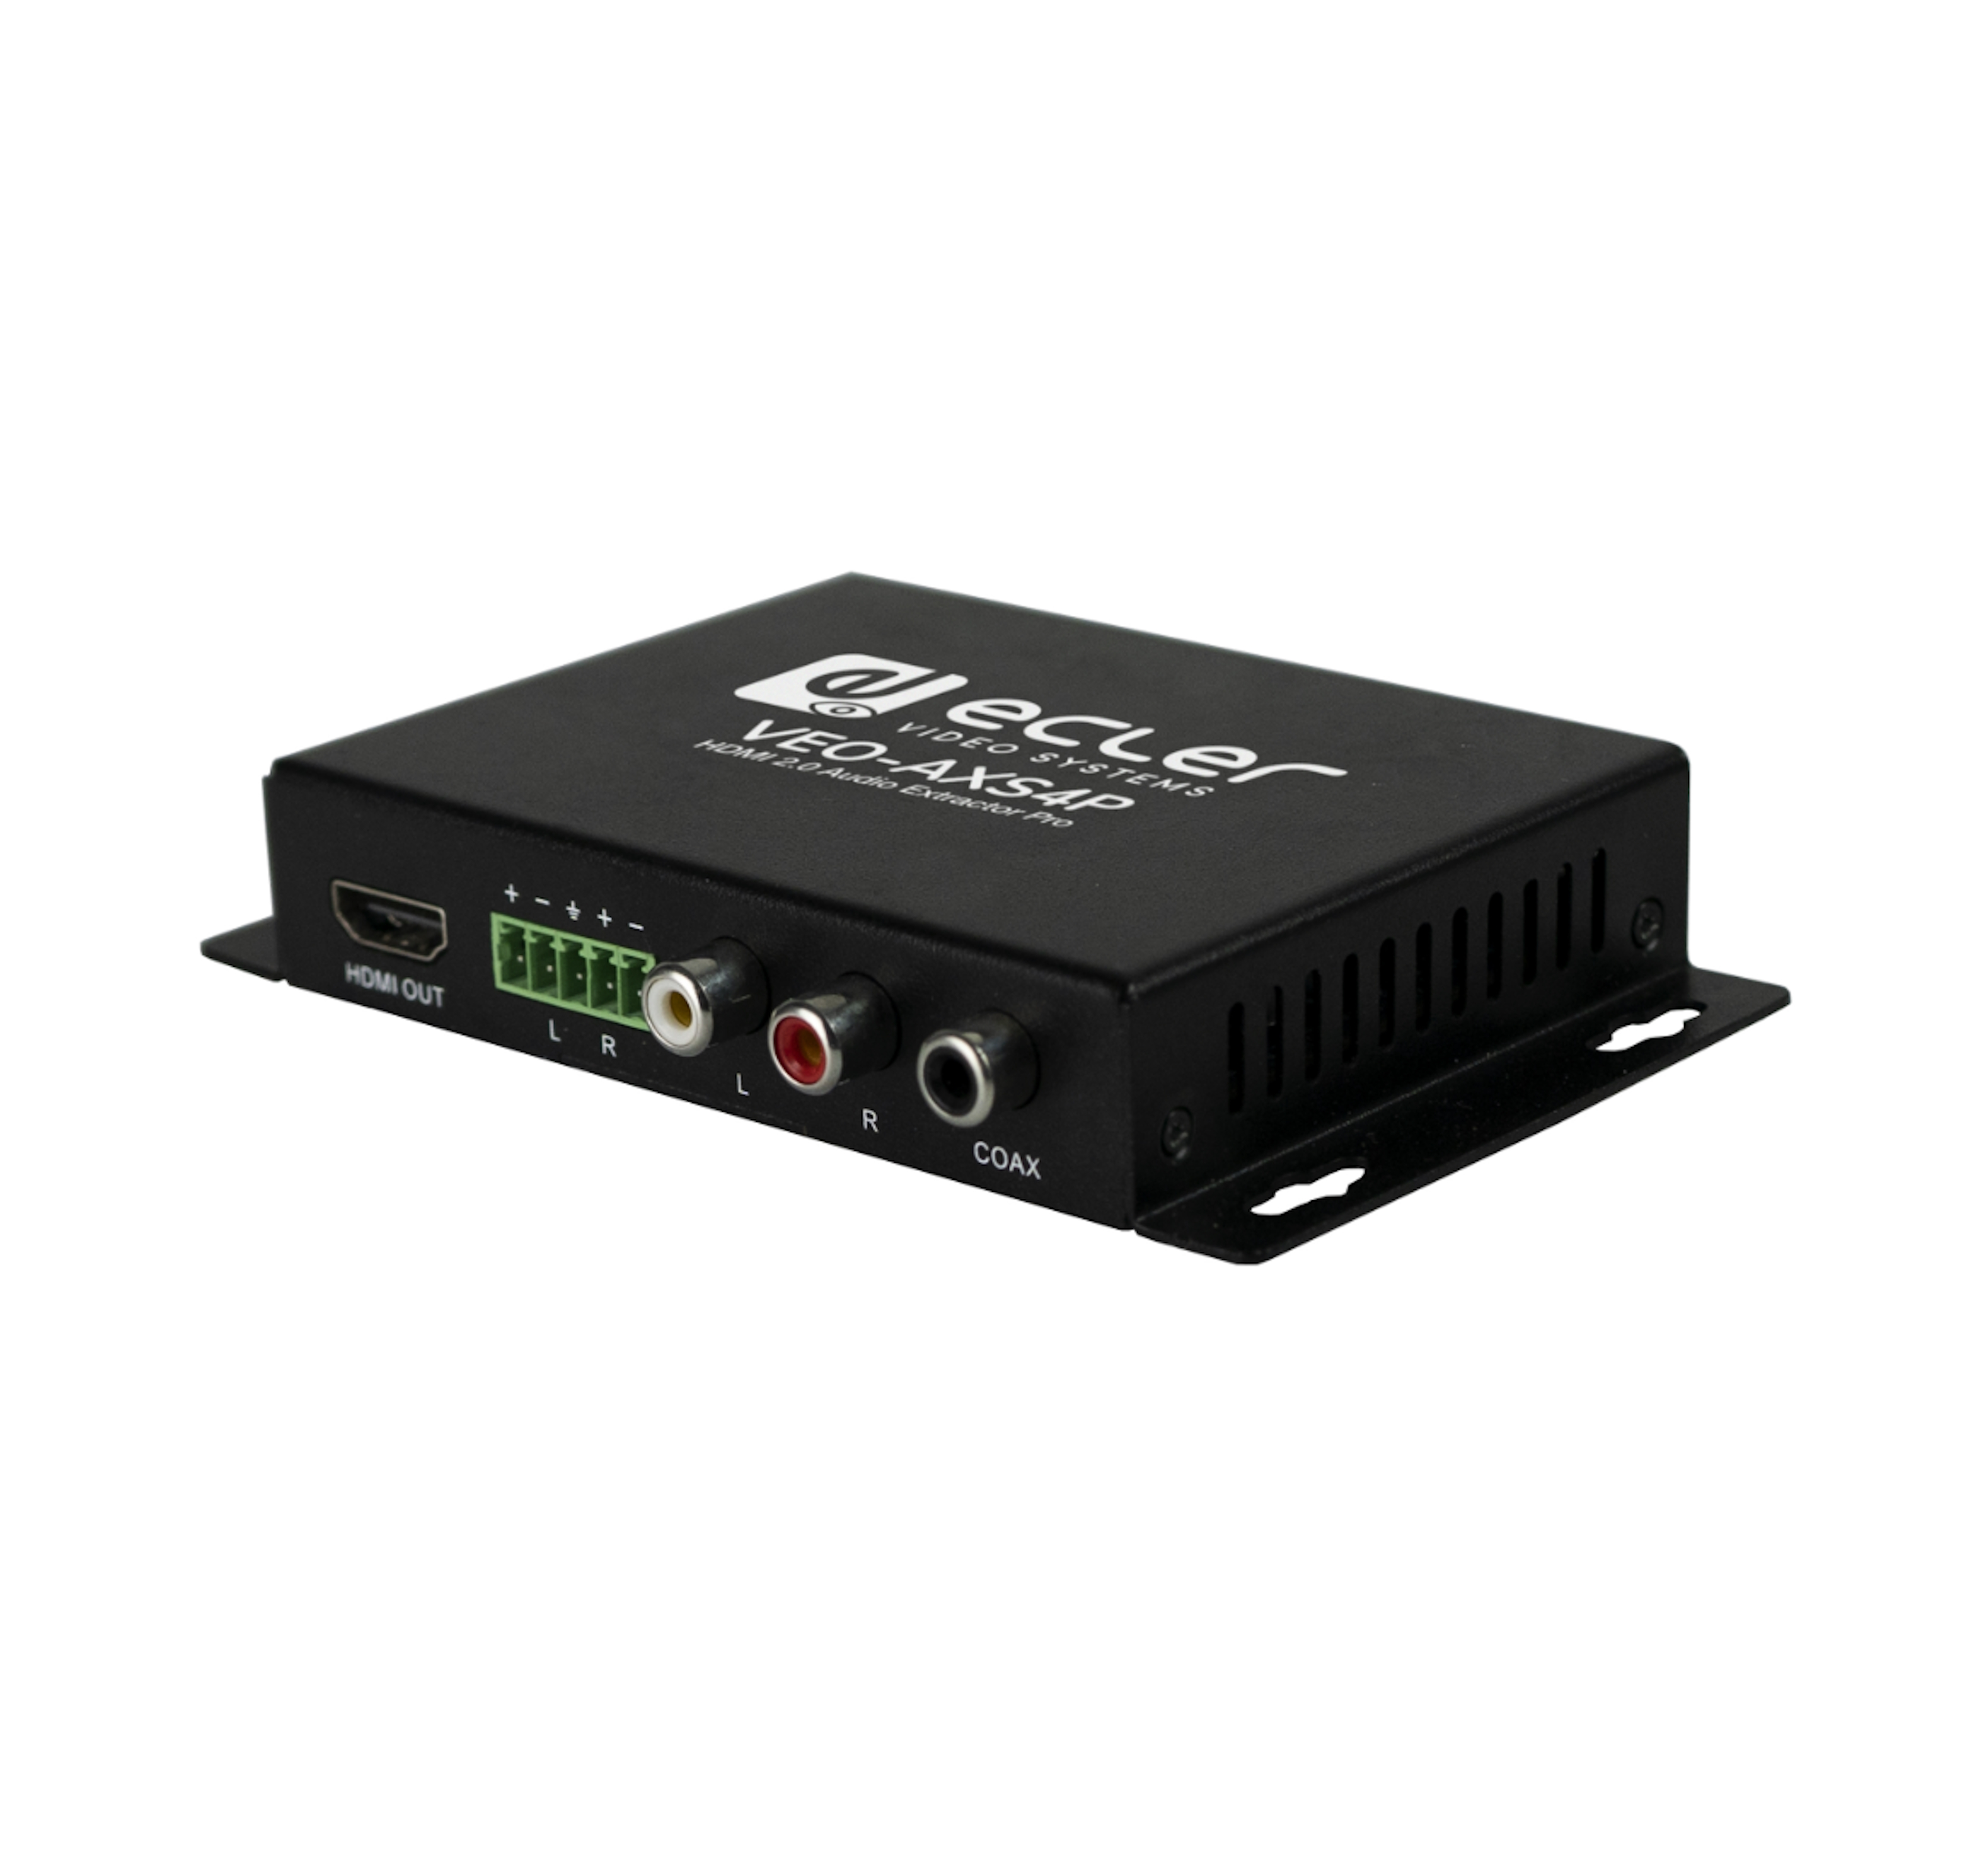 HDMI коммутаторы, разветвители, повторители Ecler VEO-AXS4P falcon eye fe mhd1108 8 канальный 5 в 1 регистратор запись 8кан 1080n 15k с н 264 h264 hdmi vga sata 1 до 6tb hdd 2 usb аудио 1 1 протокол